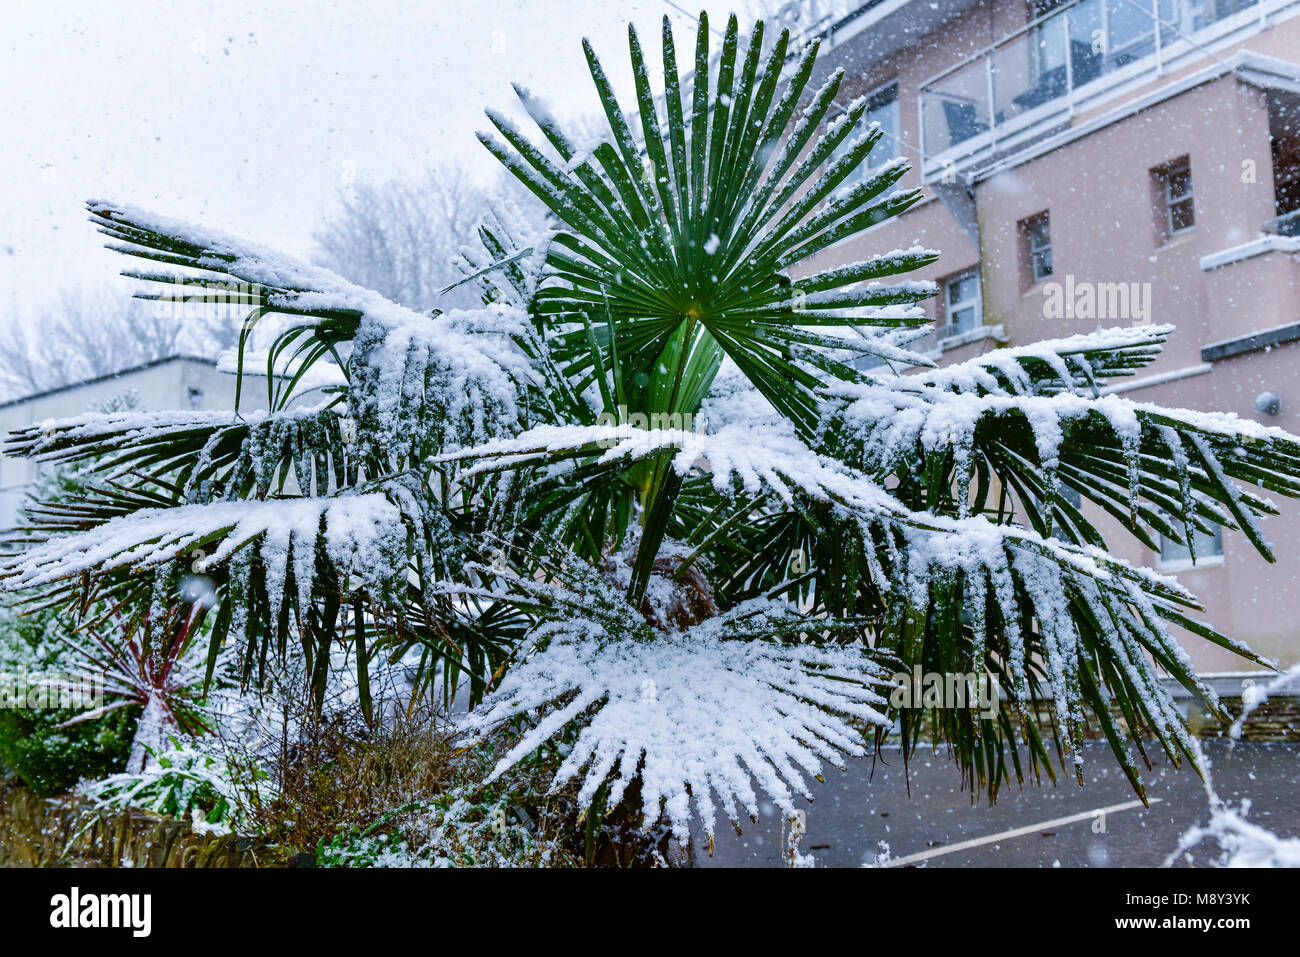 Außergewöhnliche Wetterbedingungen in Cornwall mit Schnee auf Trachycarpus undulata Chusan Palm in Newquay Cornwall fallen. Stockfoto